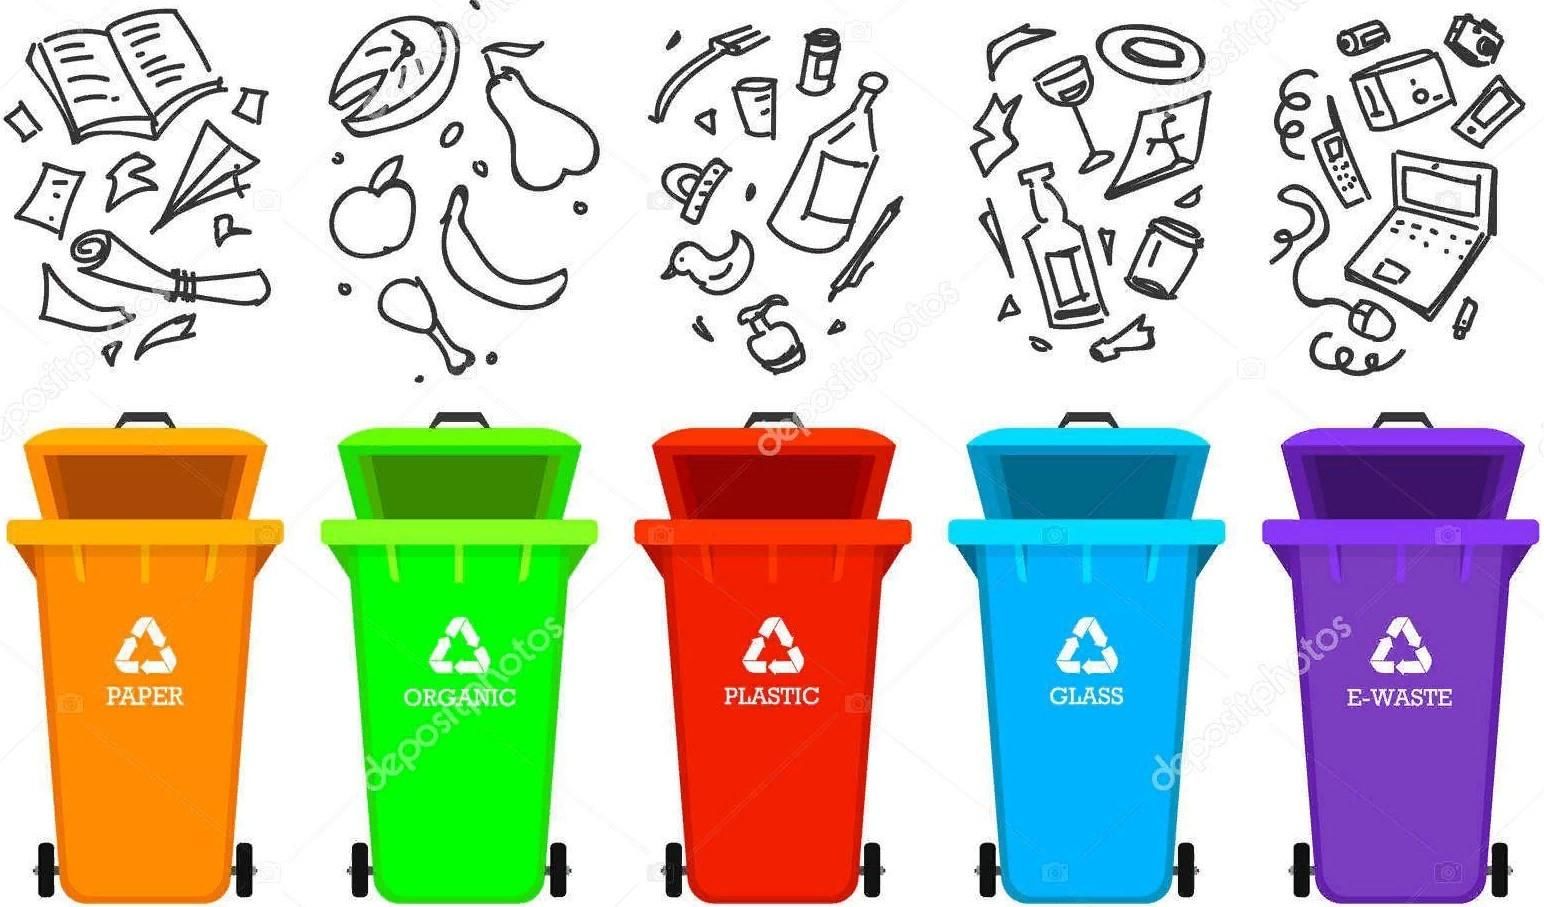 Значки для сортировки мусора для детей